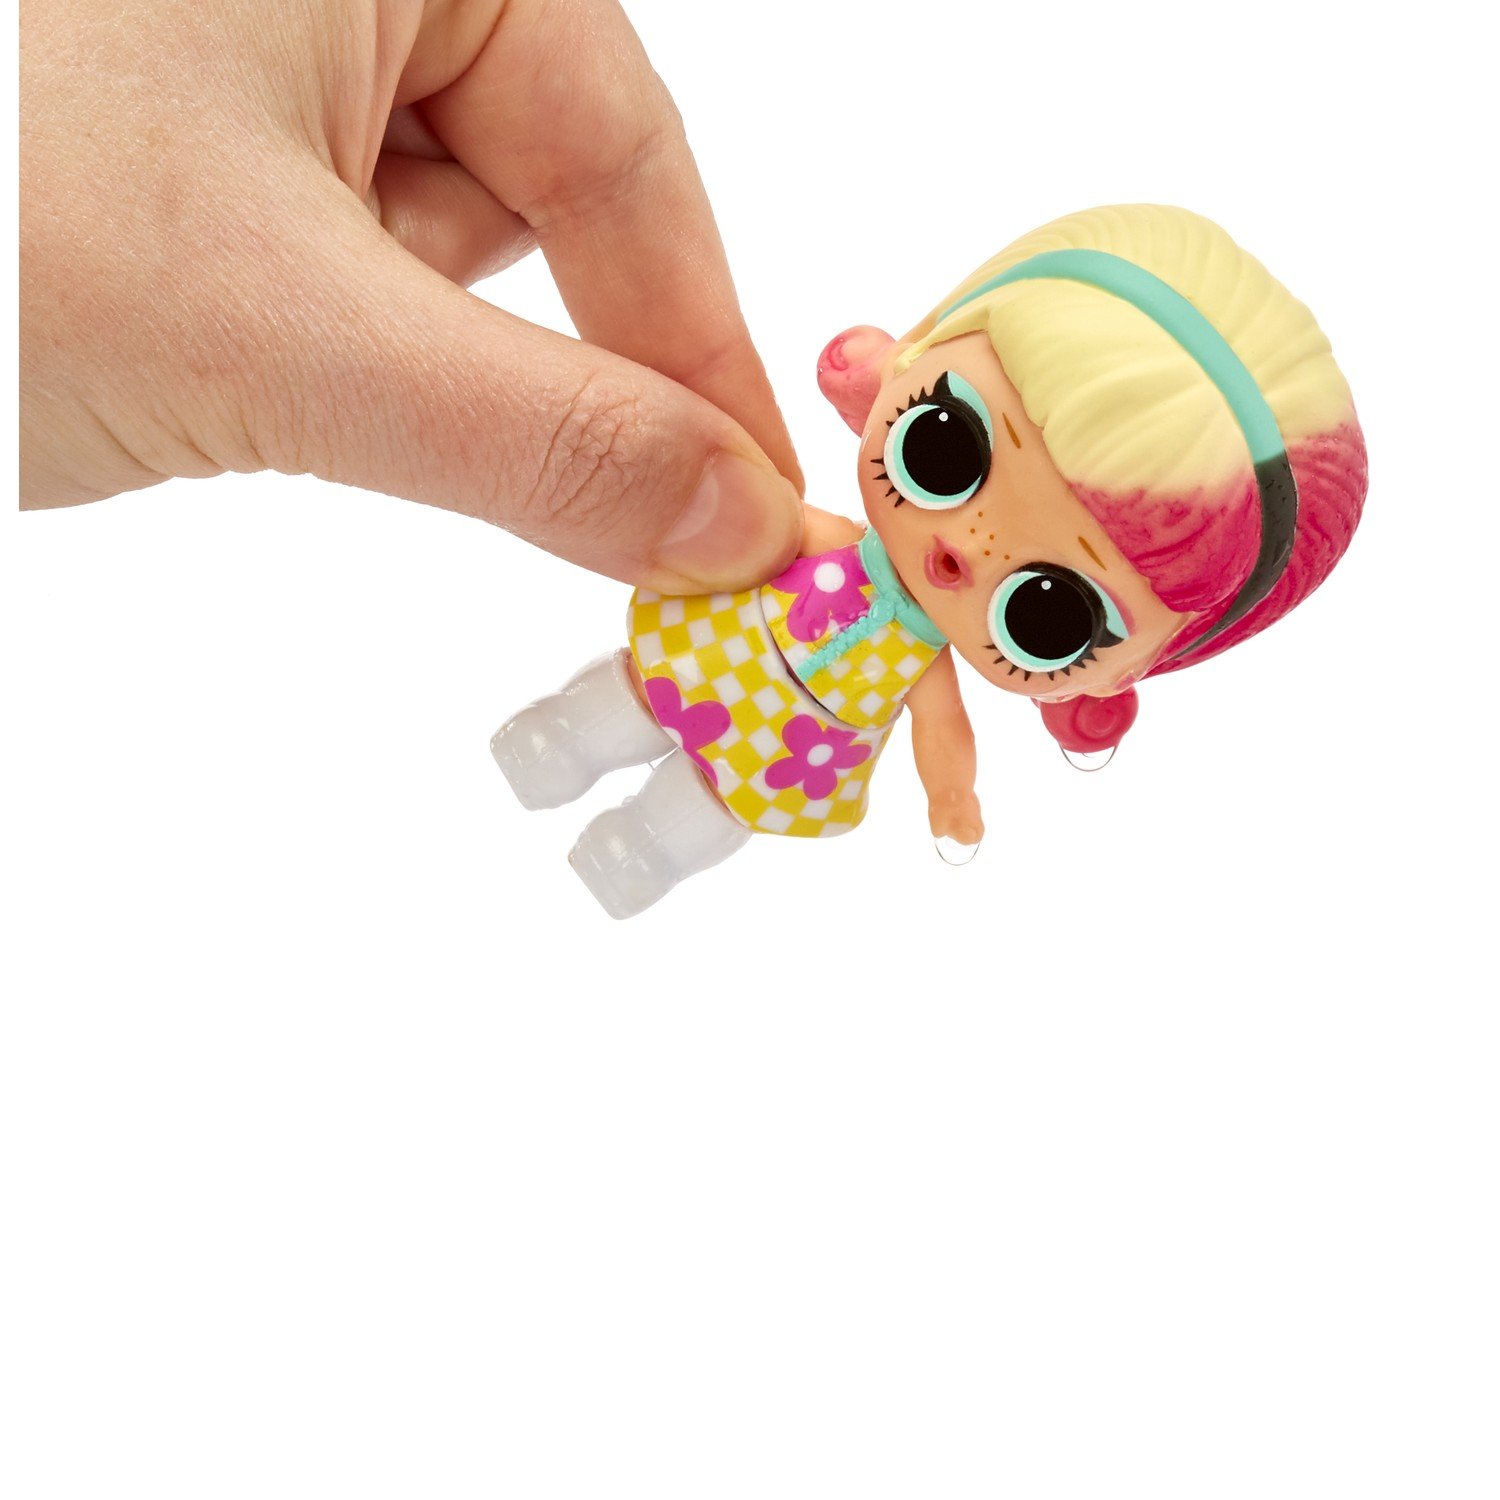 Игрушка LOL Surprise Color change Кукла в непрозрачной упаковке (Сюрприз) 576341EUC